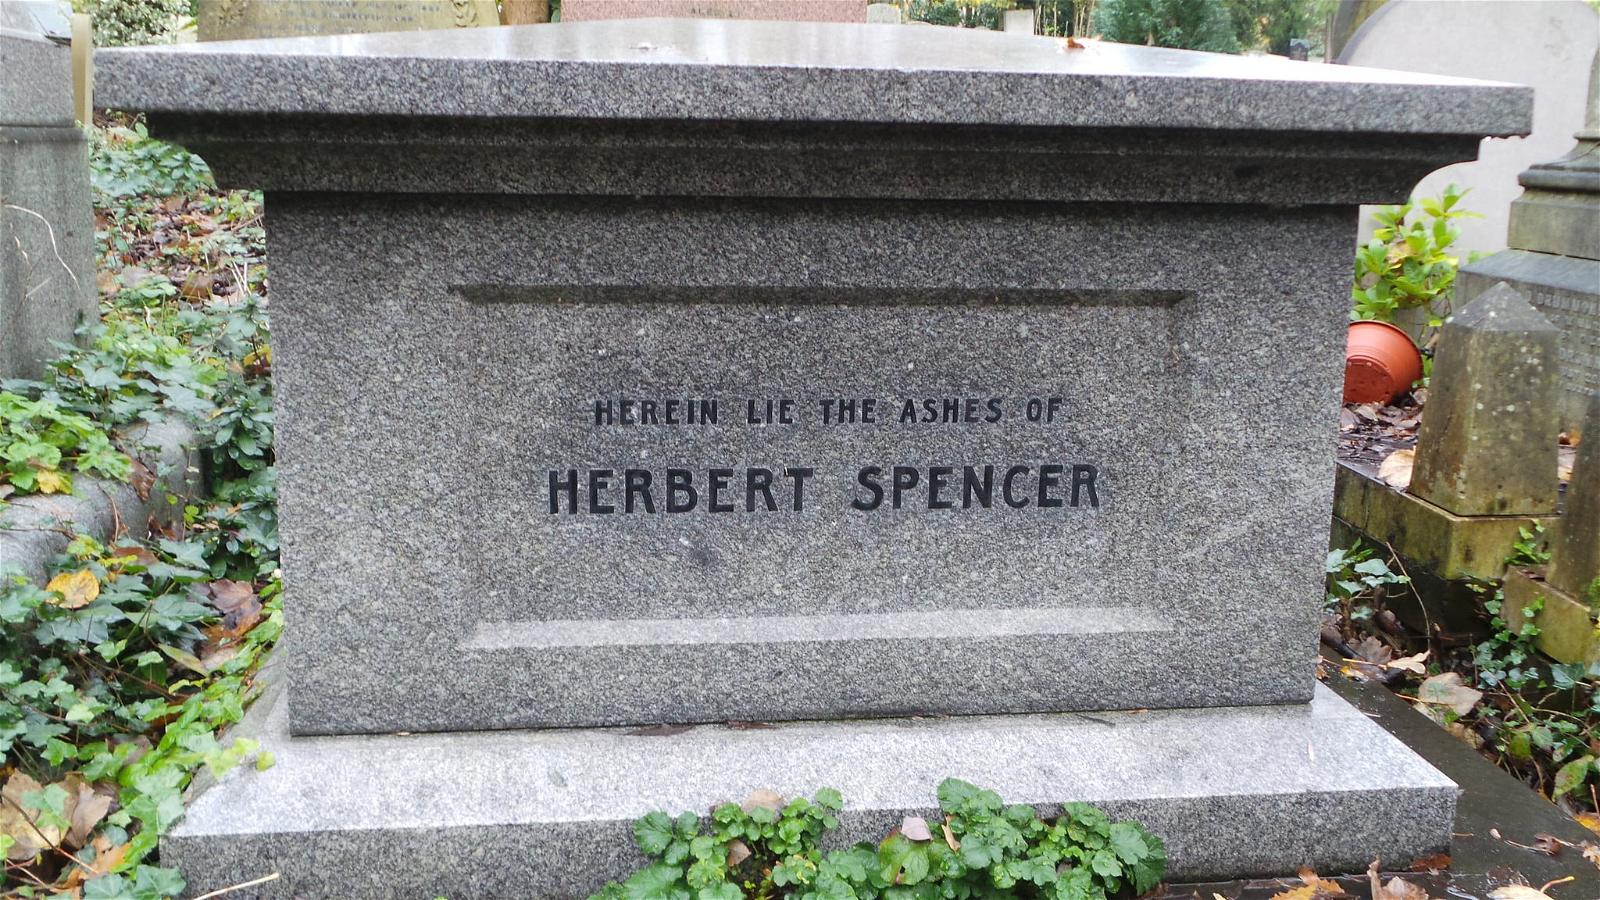 Image de Herbert Spencer. highgate london cemetery herbertspencer